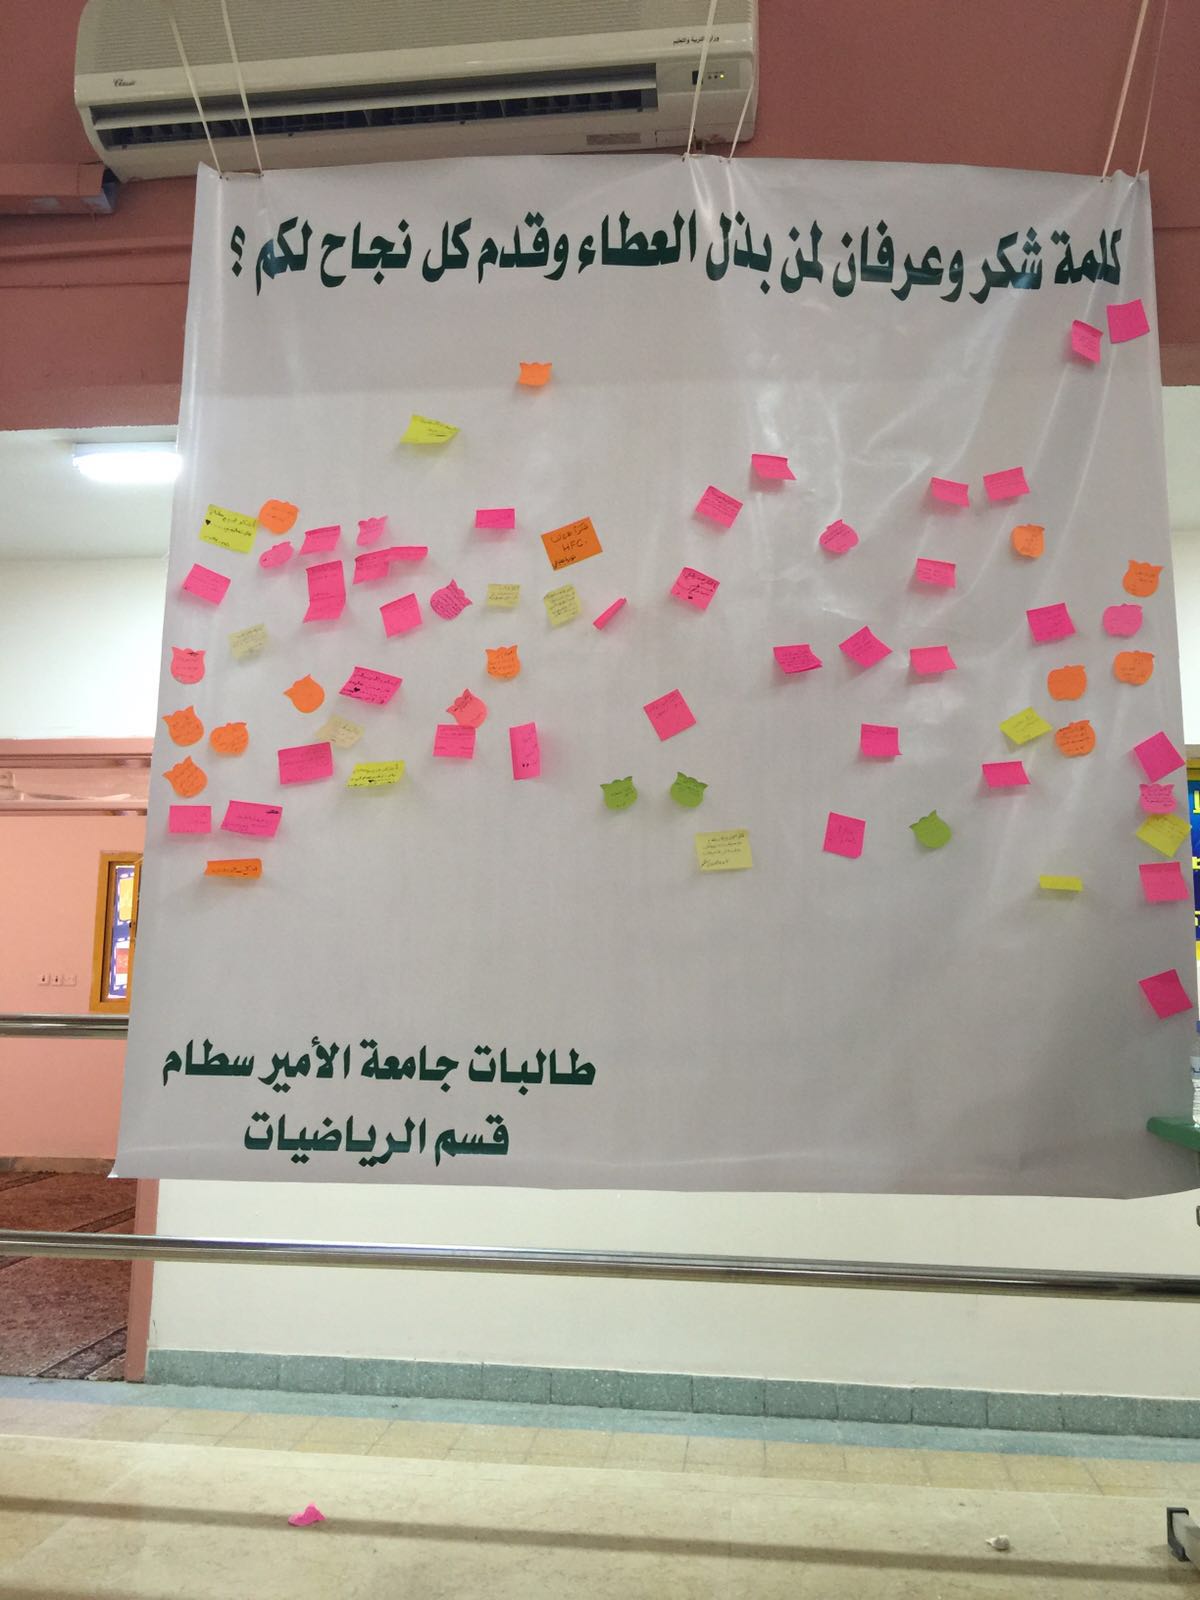 طالبات قسم الرياضيات بكلية التربية بالدلم يفعلن حملة " بالشكر تدوم